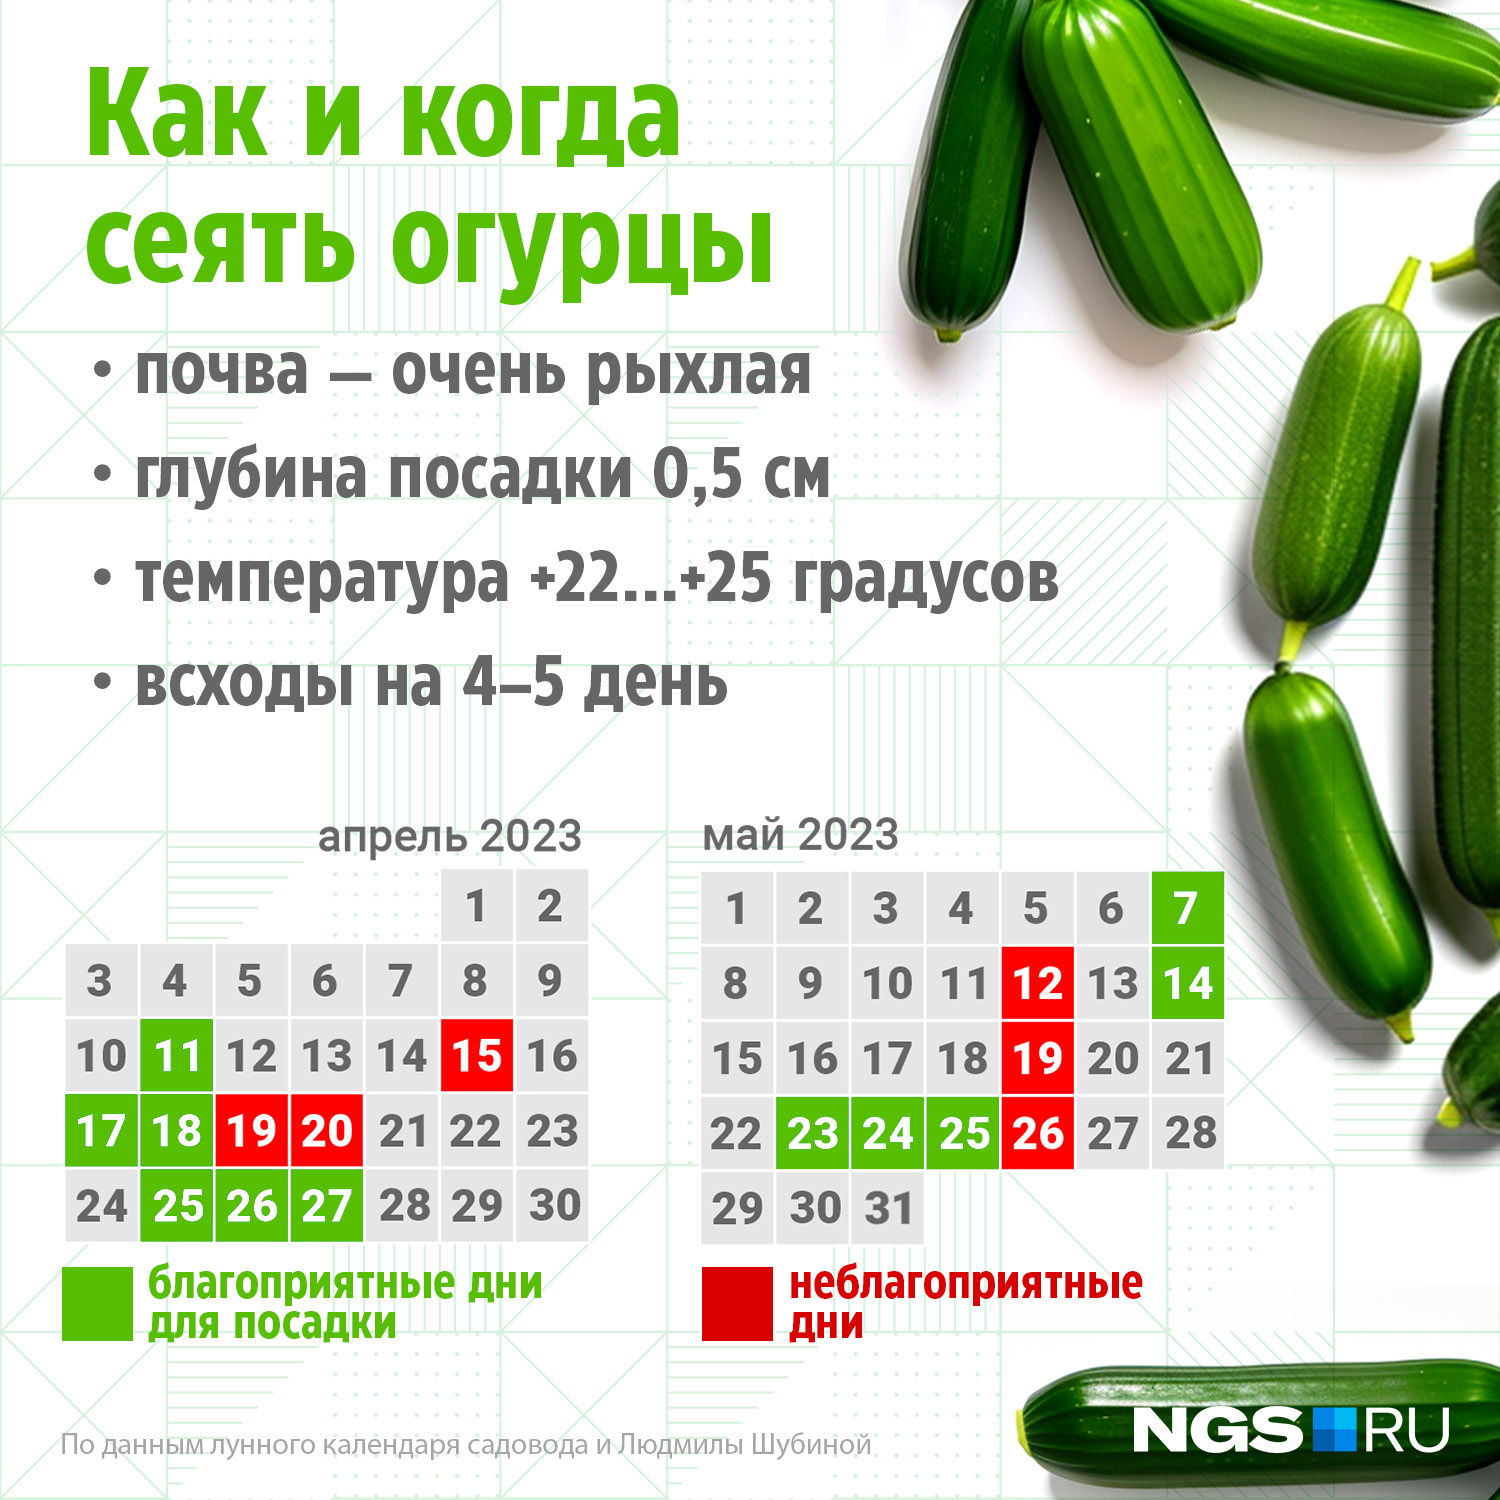 Когда сажать огурцы на рассаду: сорта огурцов для теплицы самоопыляемые,  какие не горчат - 9 апреля 2023 - msk1.ru